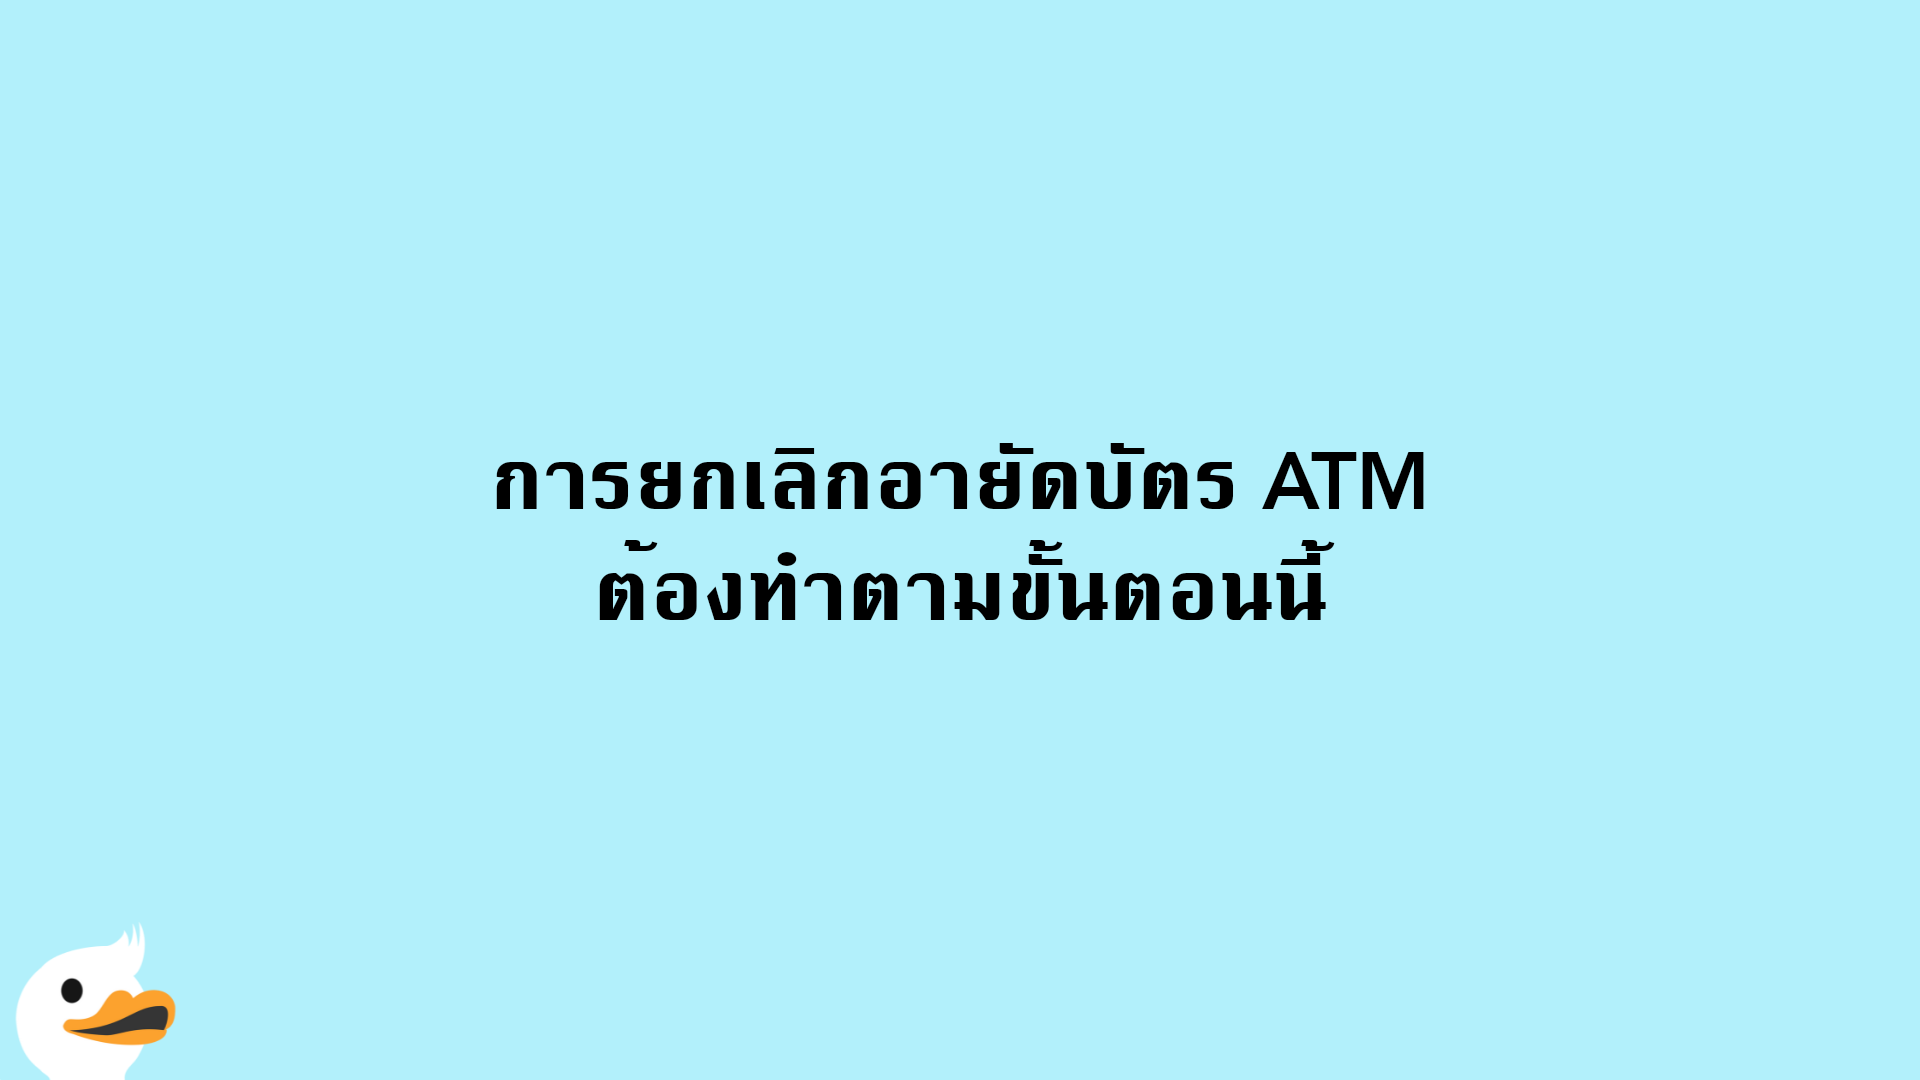 การยกเลิกอายัดบัตร ATM ต้องทำตามขั้นตอนนี้